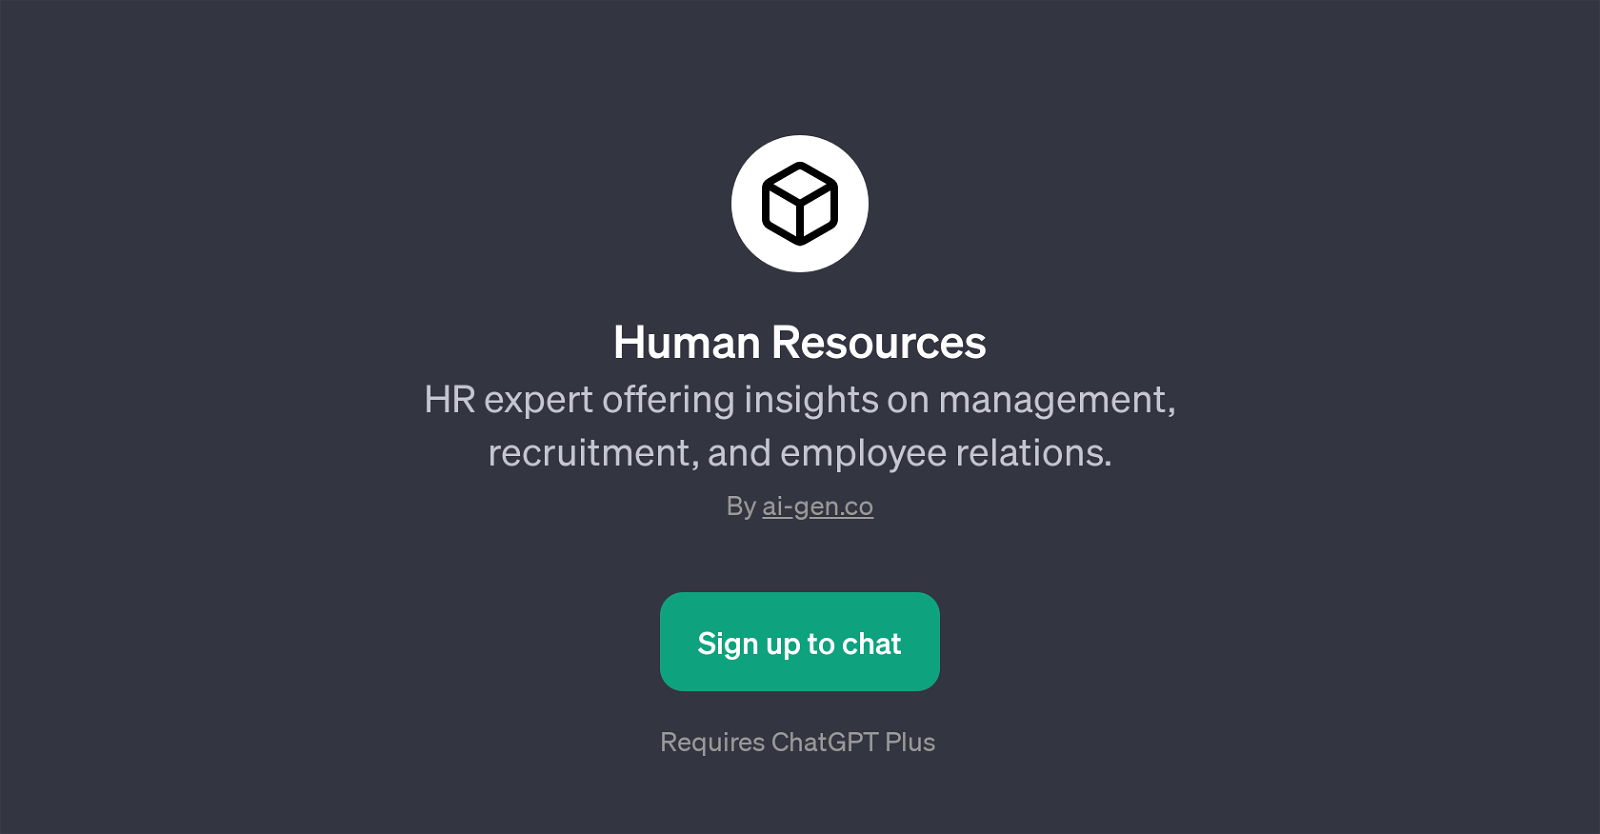 Human Resources website